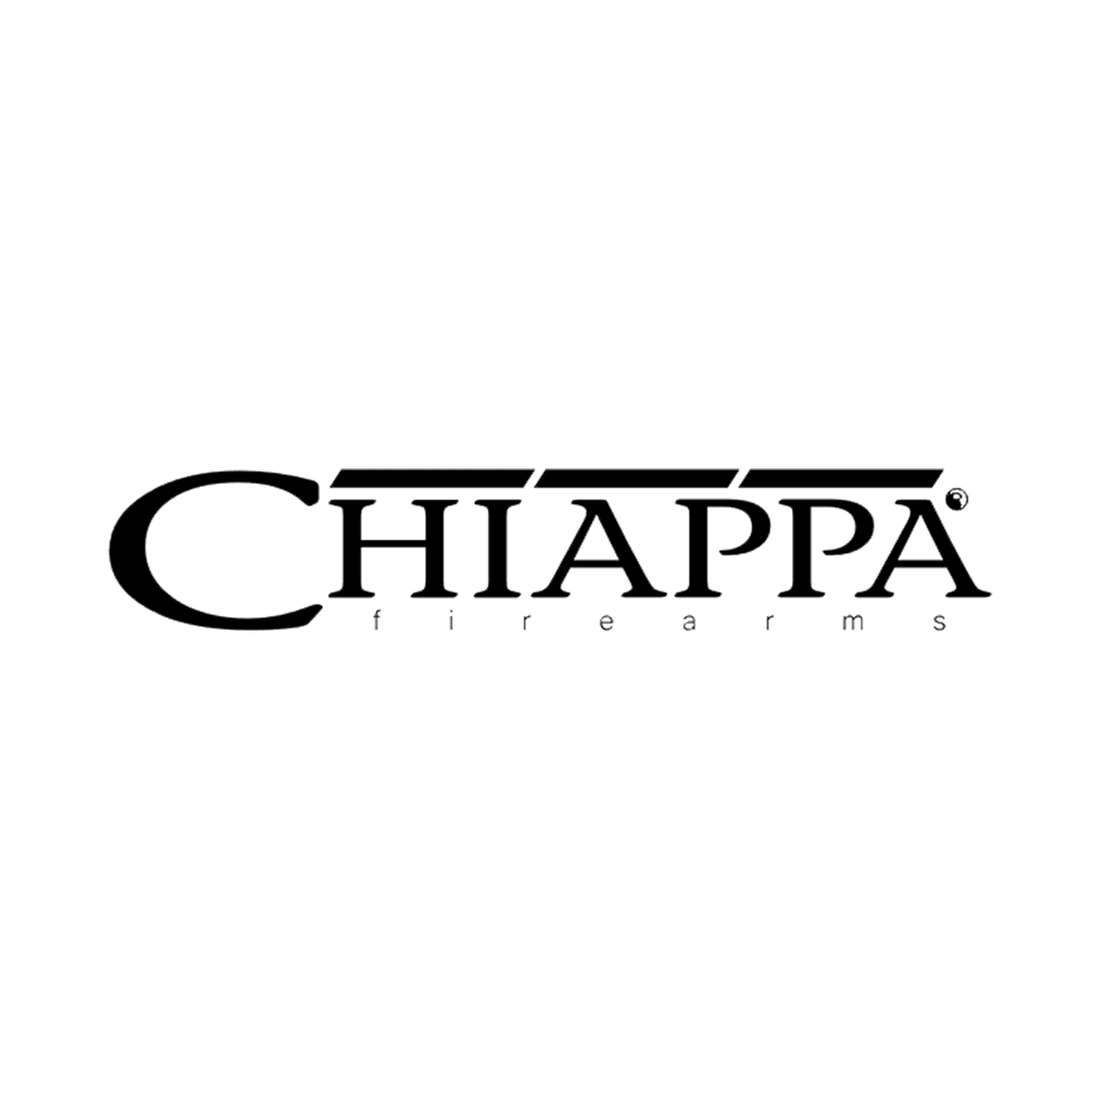 Chiappa IWB/OWB 2-n-1 Paddle Holsters